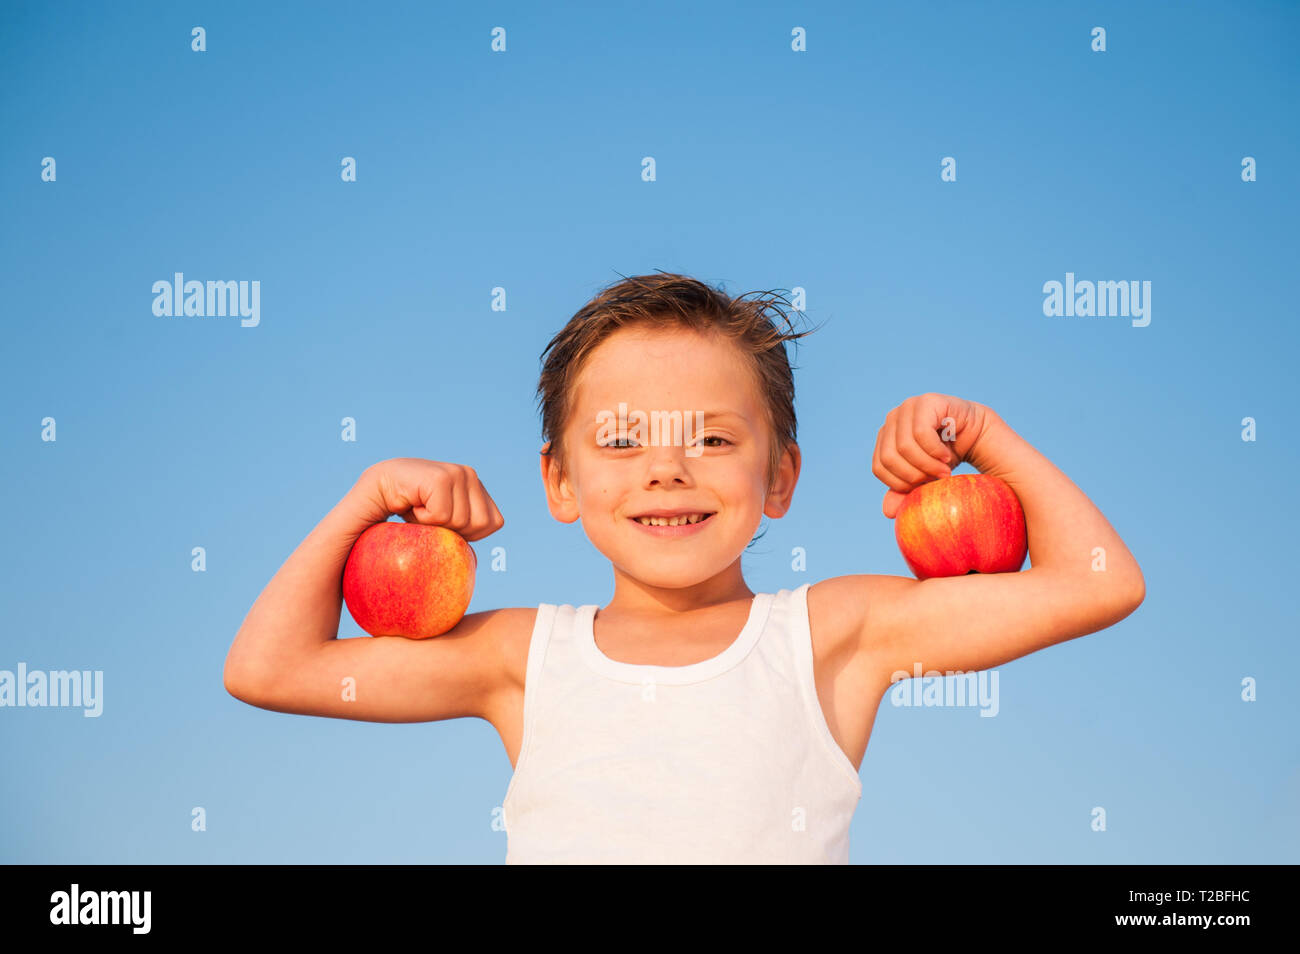 Glücklichen kleinen kaukasischen Kind in weißes Tank Top mit Muskel Bizeps mit Äpfeln auf blauen Himmel Hintergrund Stockfoto